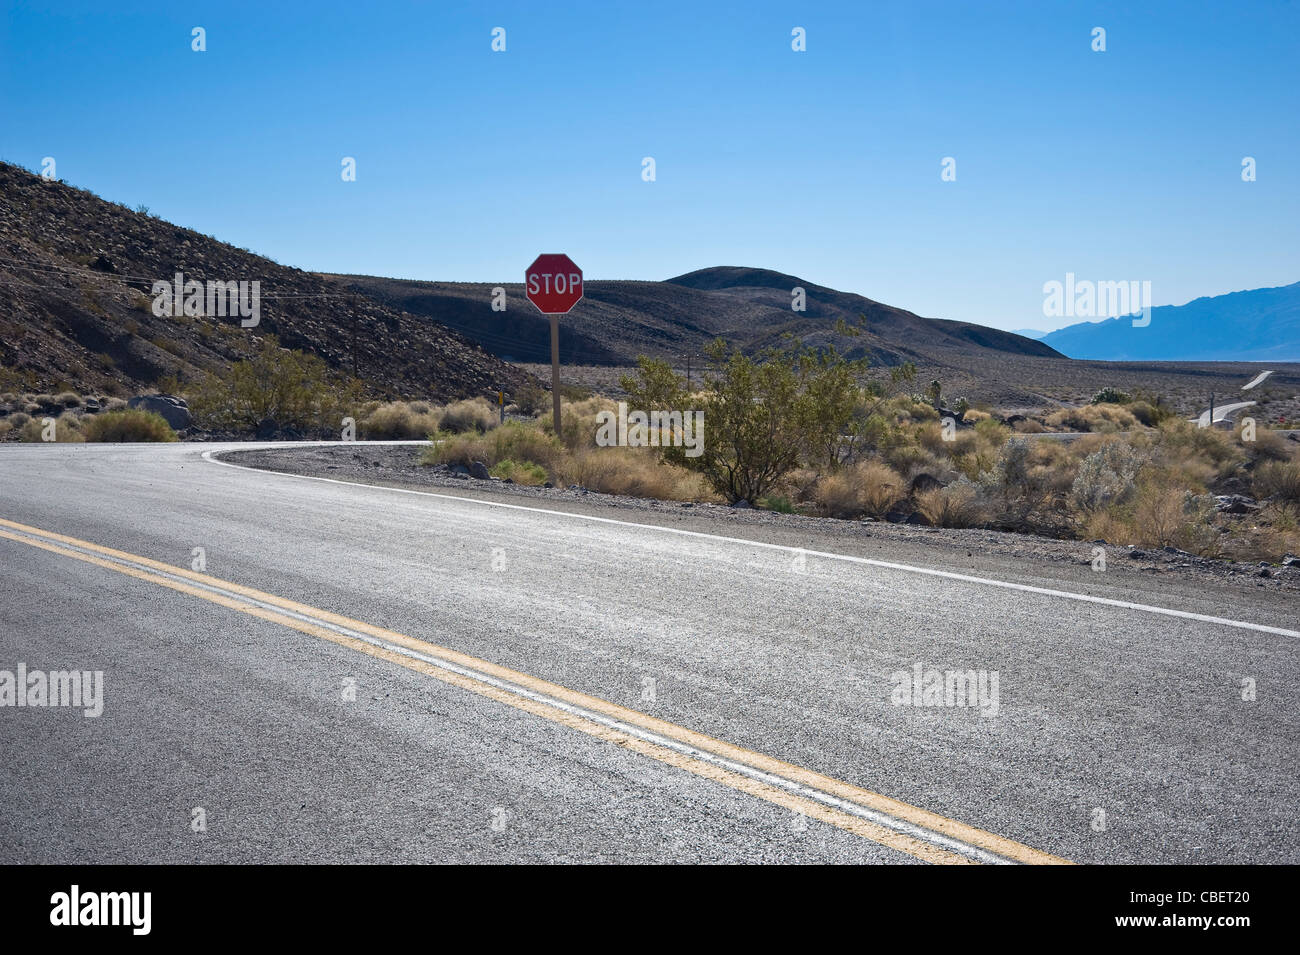 Deserto autostrada intersezione con il segnale di arresto, Nevada USA Foto Stock